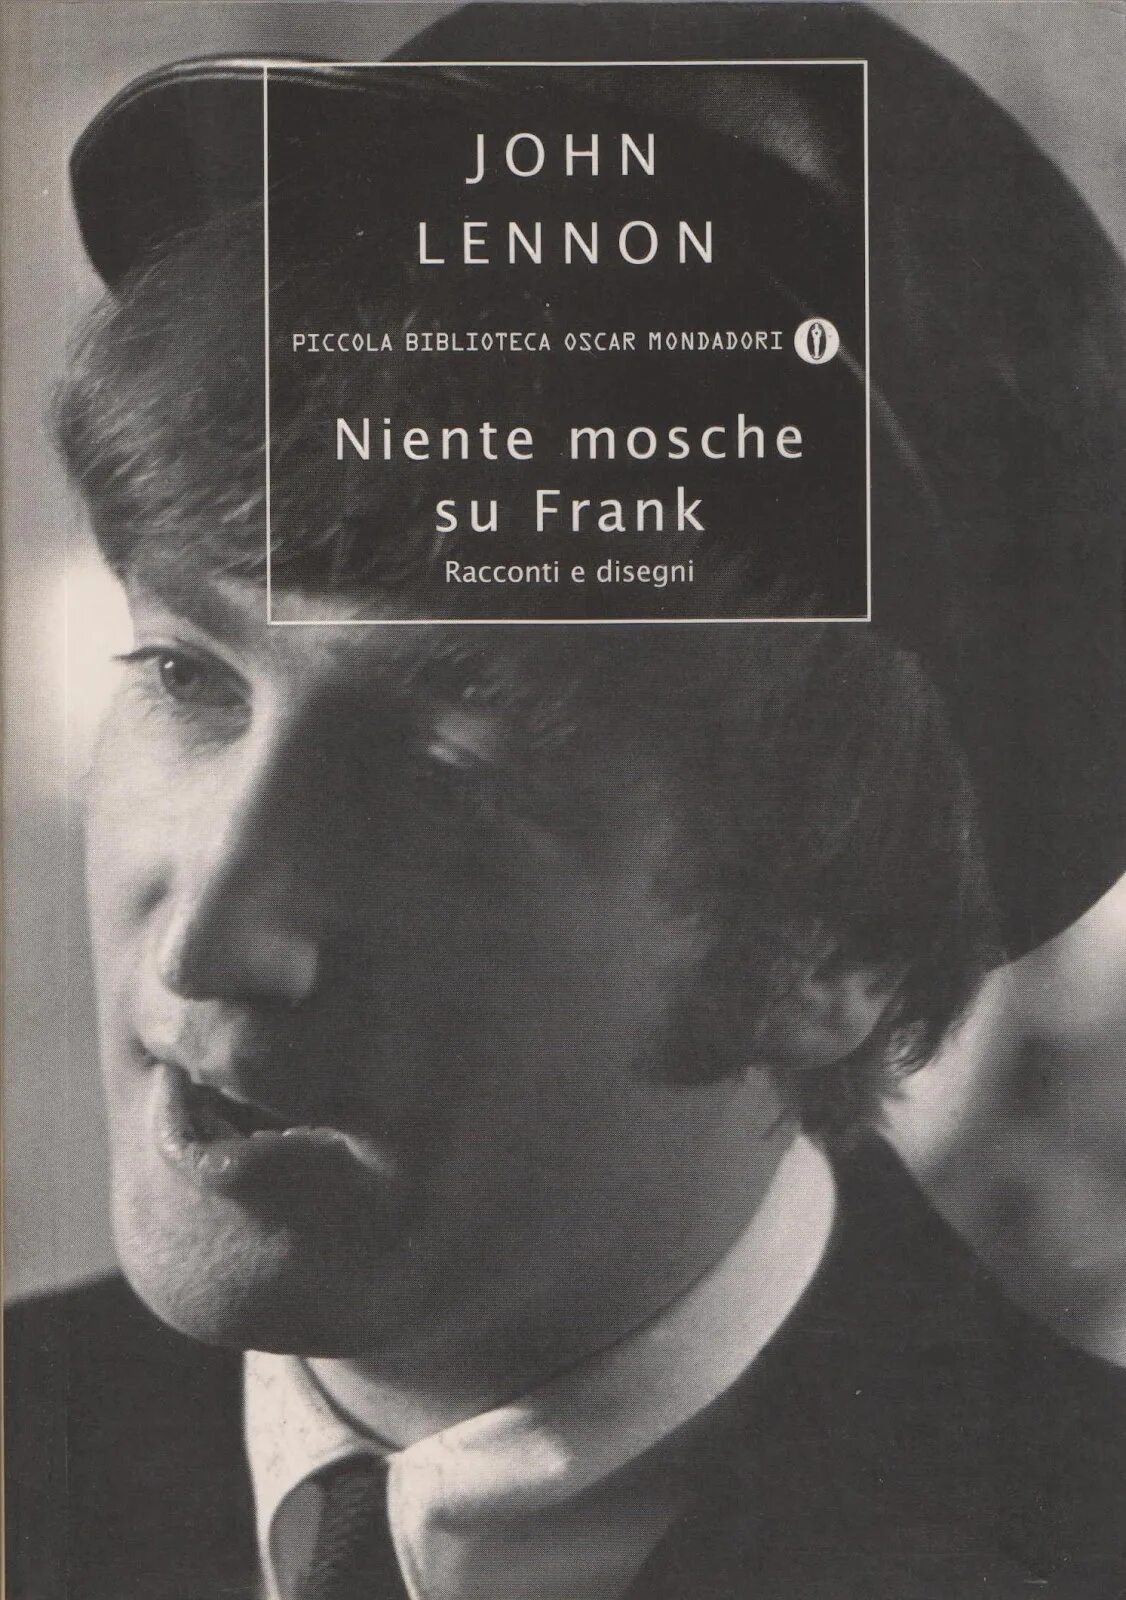 Джон леннон книги. Книги про Джона Леннона. Жизненный урок Джон Леннон.